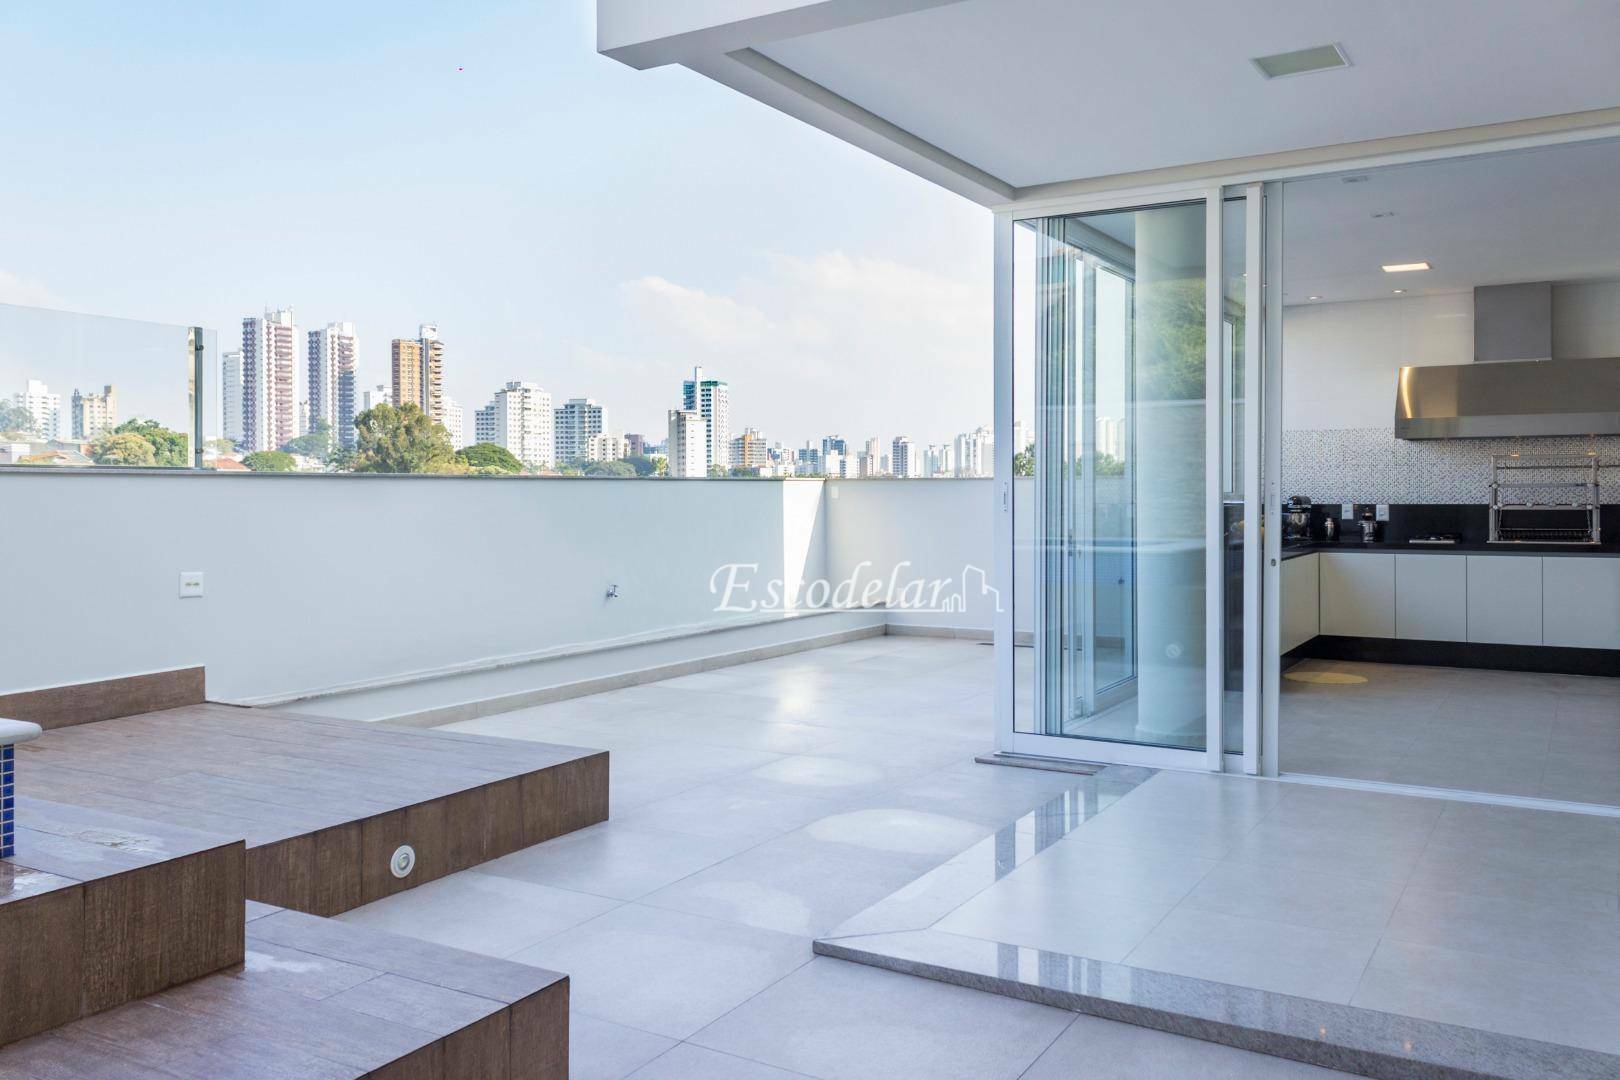 Sobrado com 3 dormitórios à venda, 424 m² por R$ 3.400.000,00 - Jardim França - São Paulo/SP